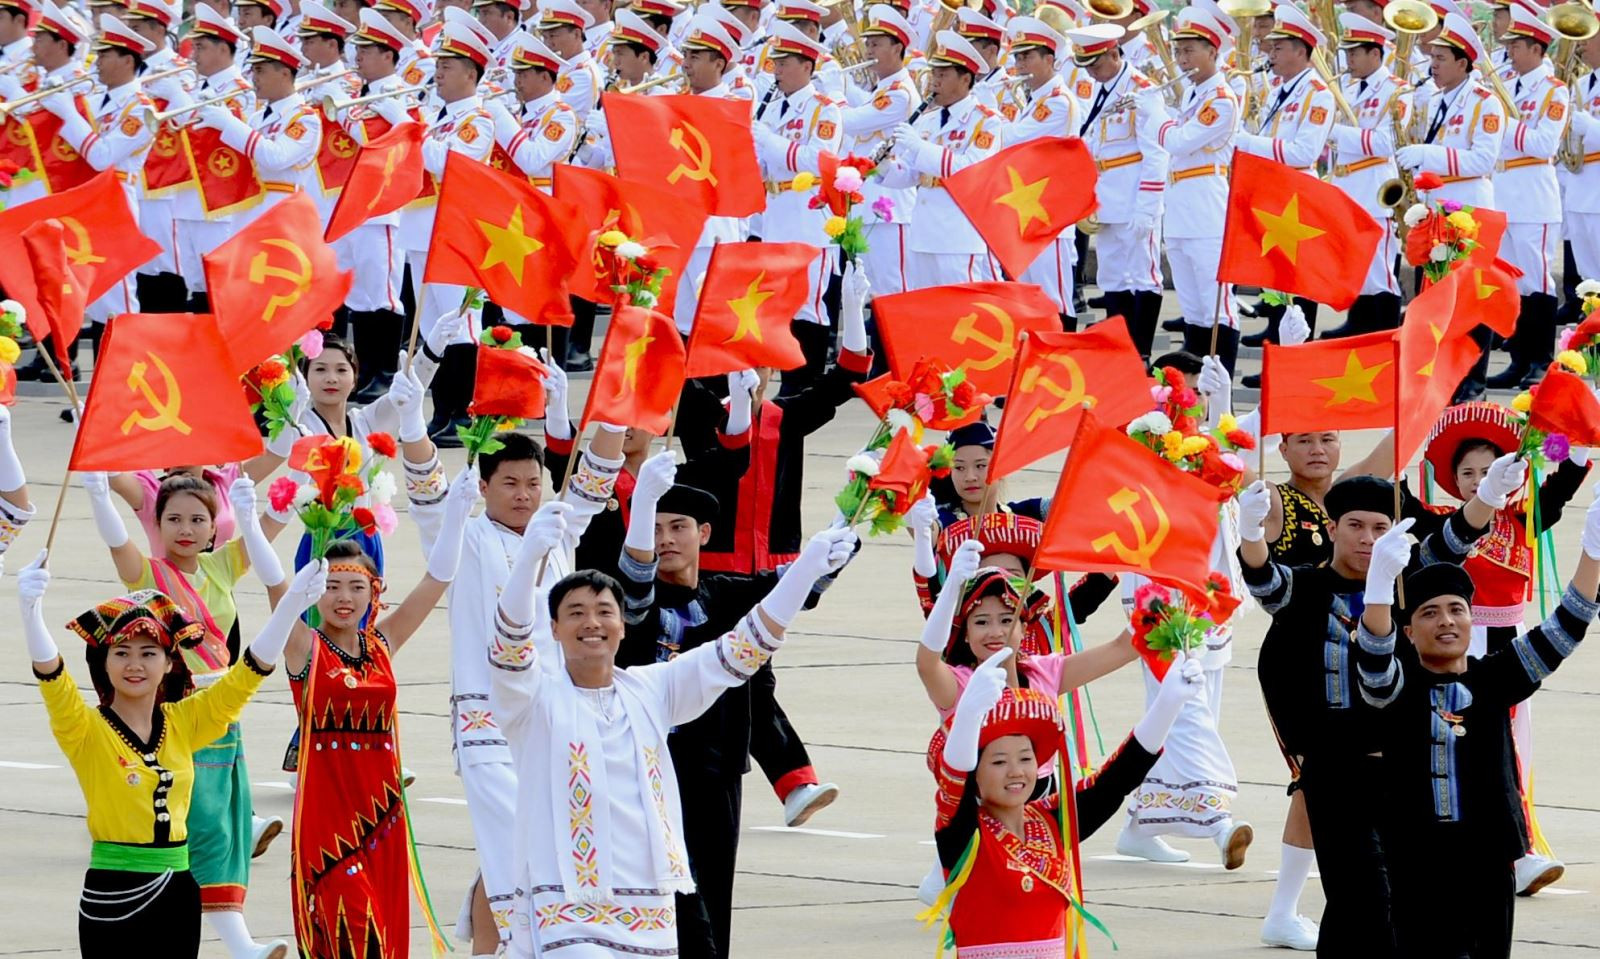 Lời kêu gọi thi đua ái quốc của Chủ tịch Hồ Chí Minh đã thấm sâu vào các tầng lớp nhân dân, đồng bào trong cả nước.